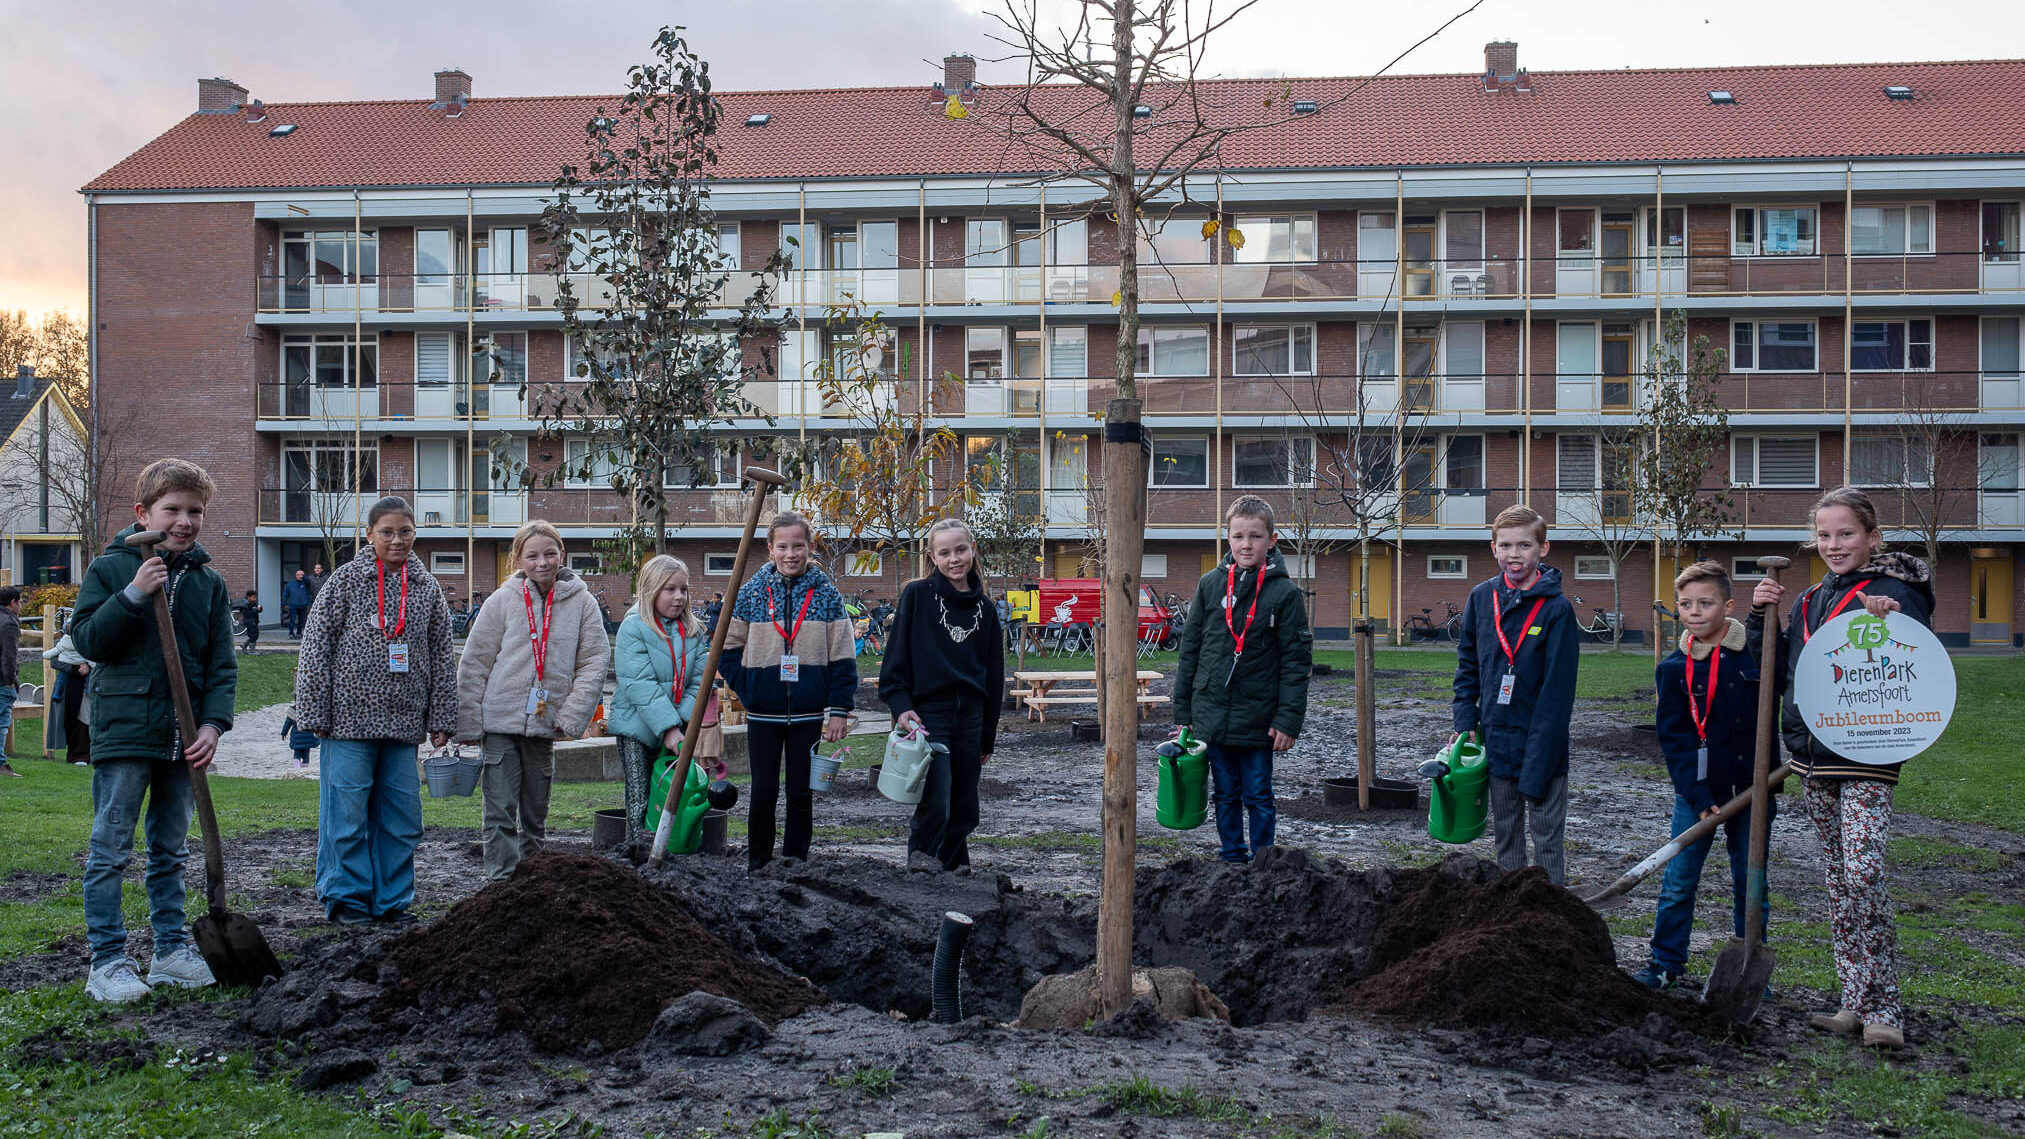 DierenPark Amersfoort sluit jubileumjaar af met planten boom in Amersfoort